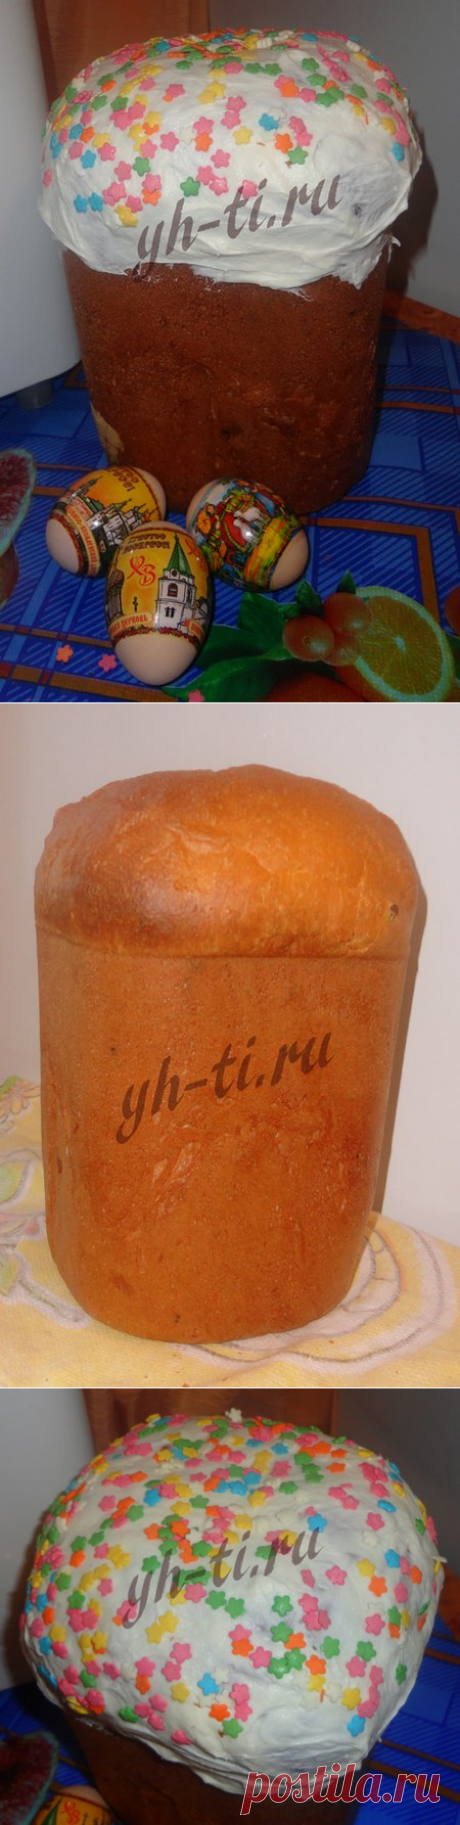 Рецепт пасхального кулича в хлебопечке | Ух ты!